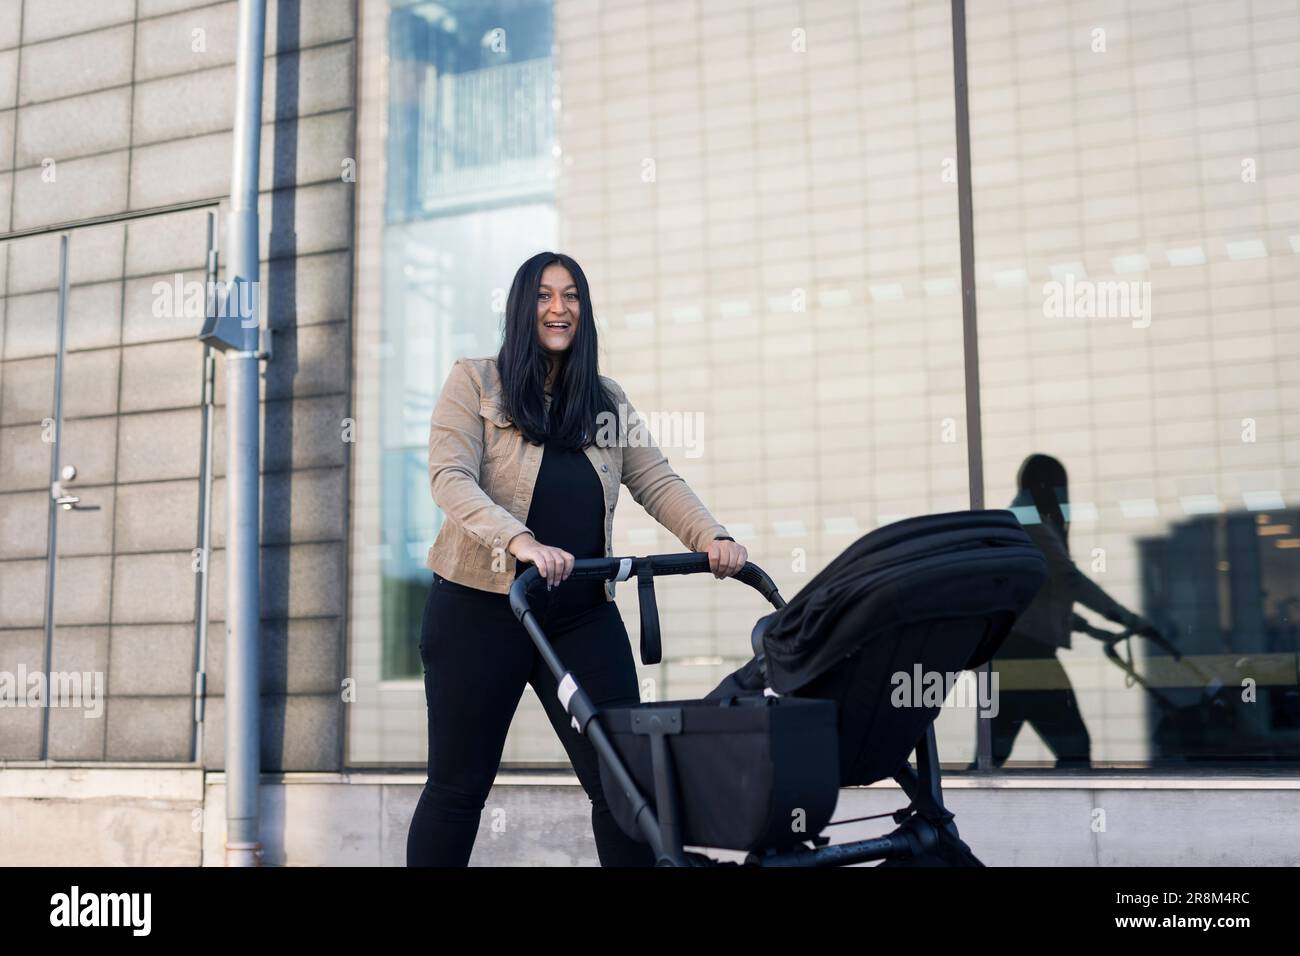 Blick auf eine lächelnde Erwachsene Frau im Elternurlaub, die einen Kinderwagen schiebt Stockfoto